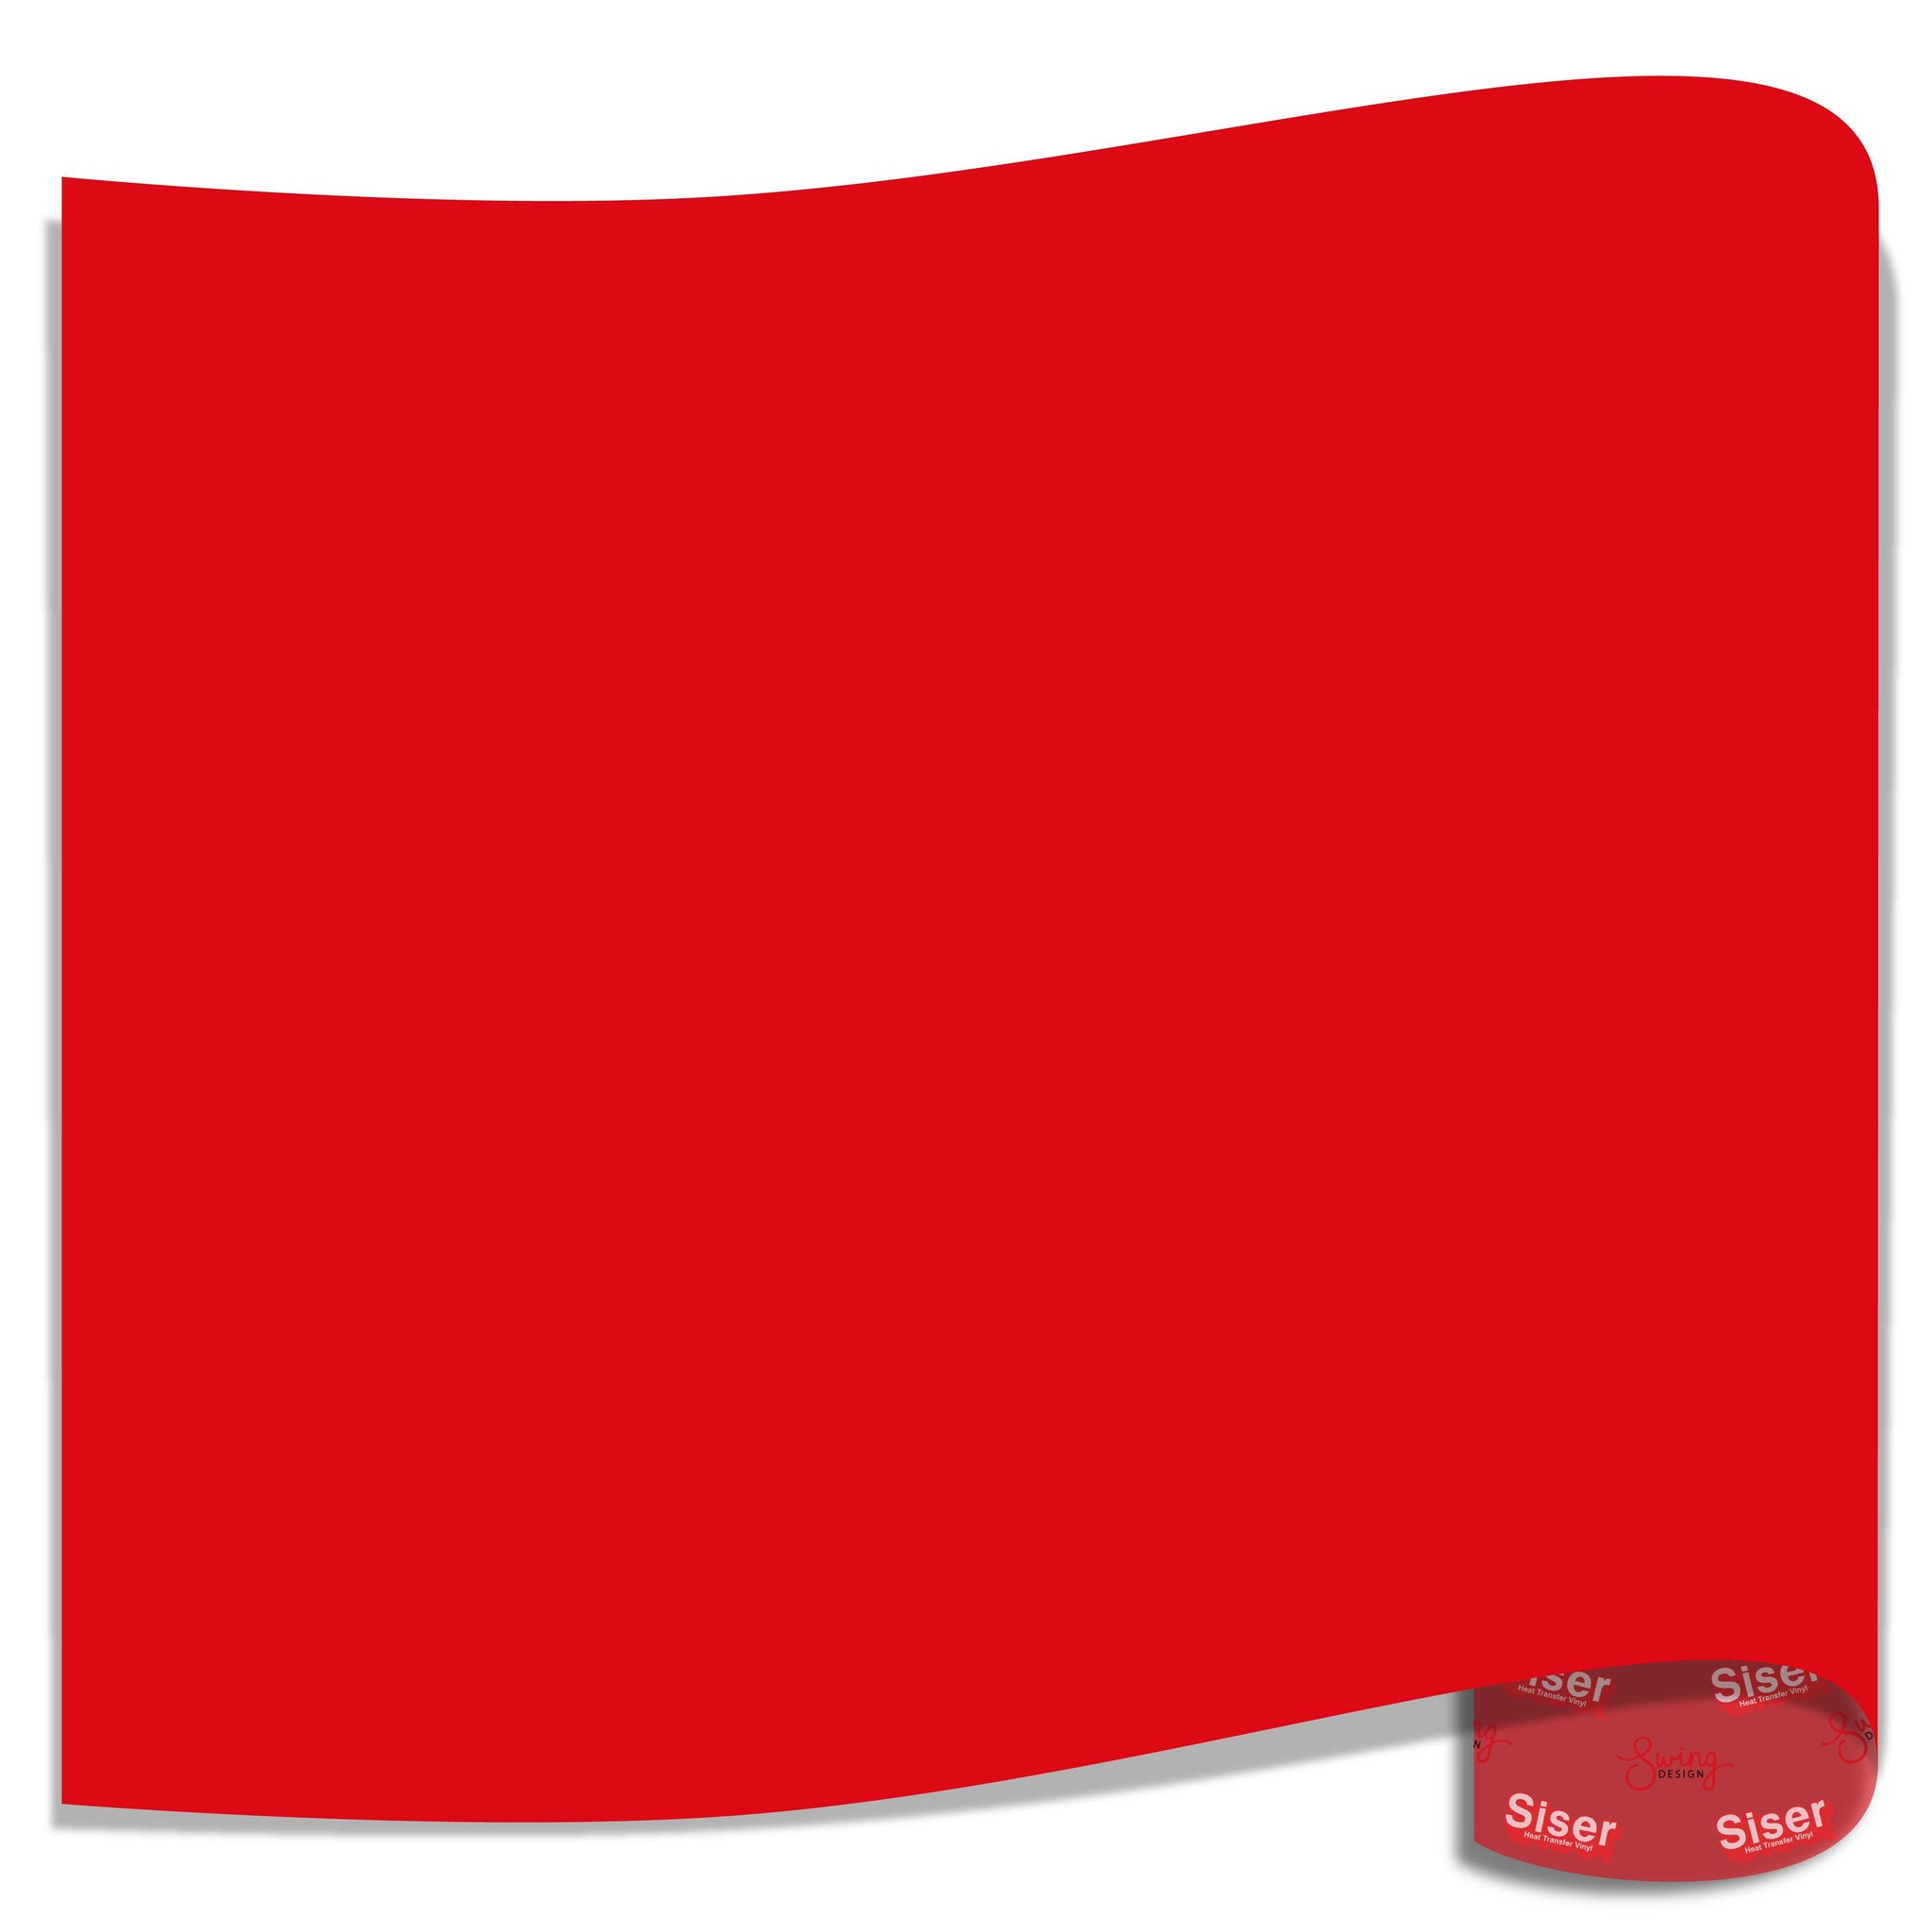 Siser StripFlock PRO Heat Transfer Vinyl - Bright Red HTV